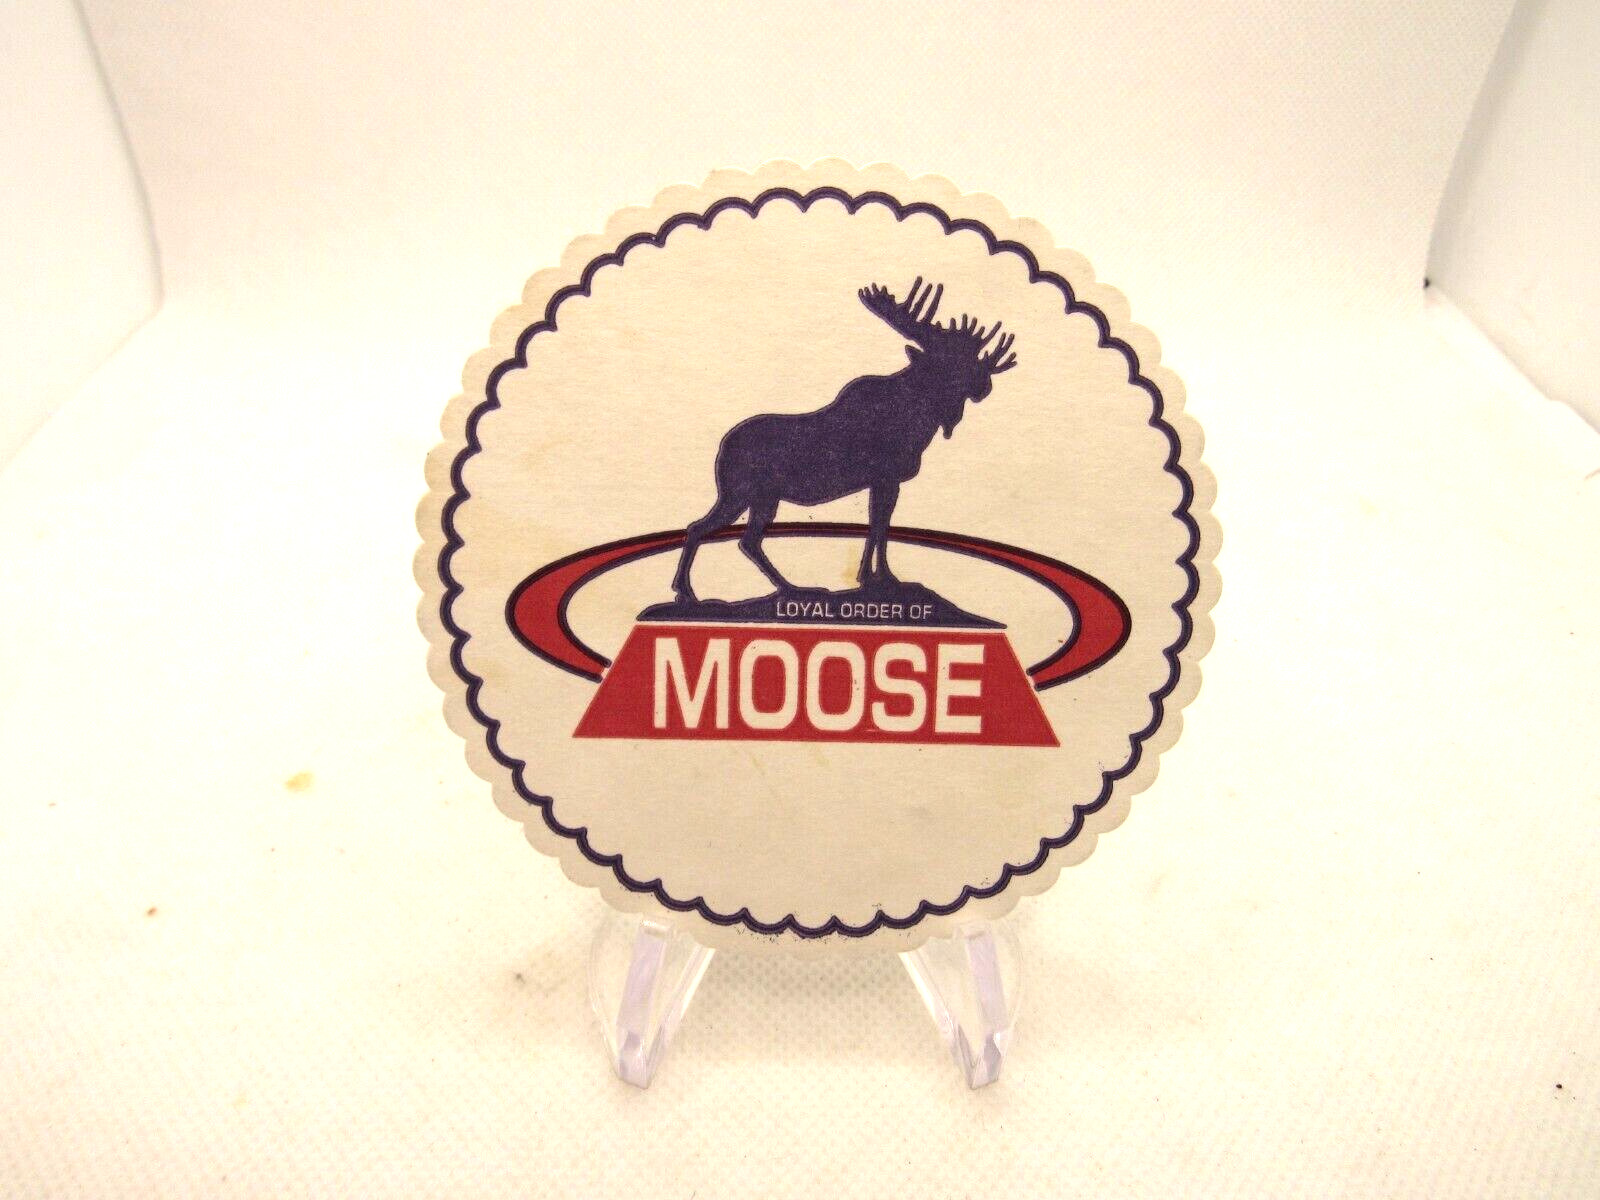 Loyal Order of Moose Beer coaster